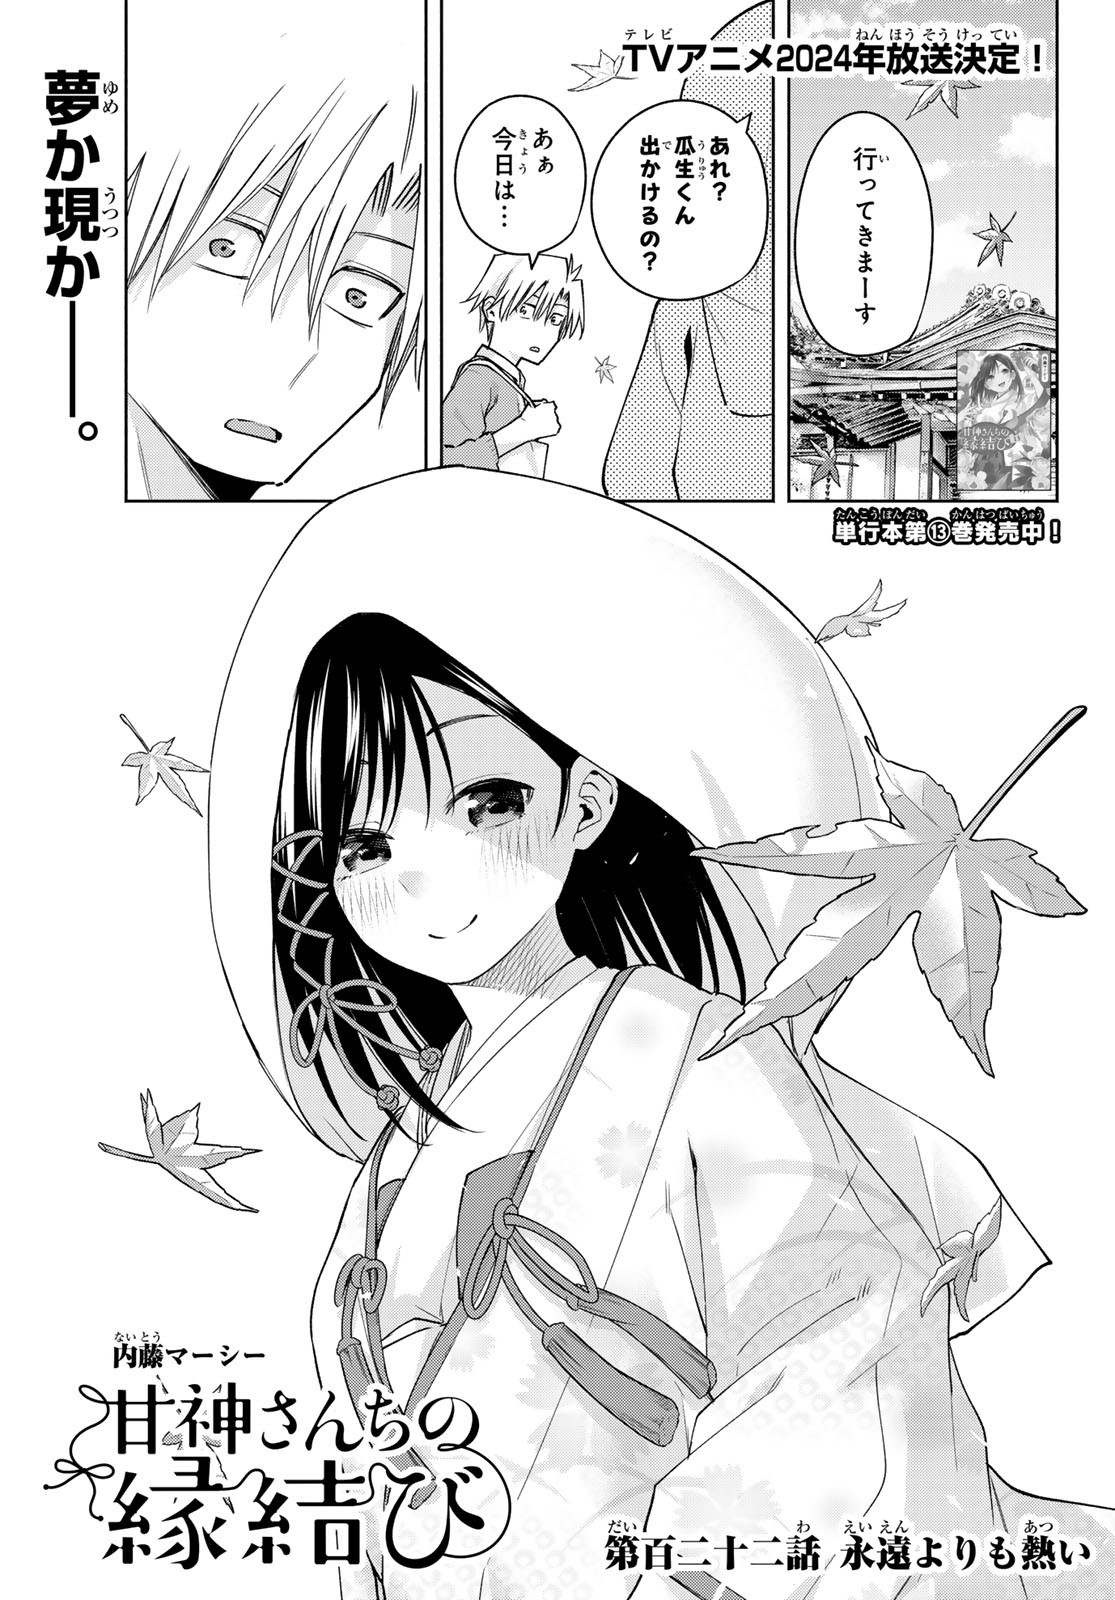 Amagami-san Chi no Enmusubi - Chapter 122 - Page 1